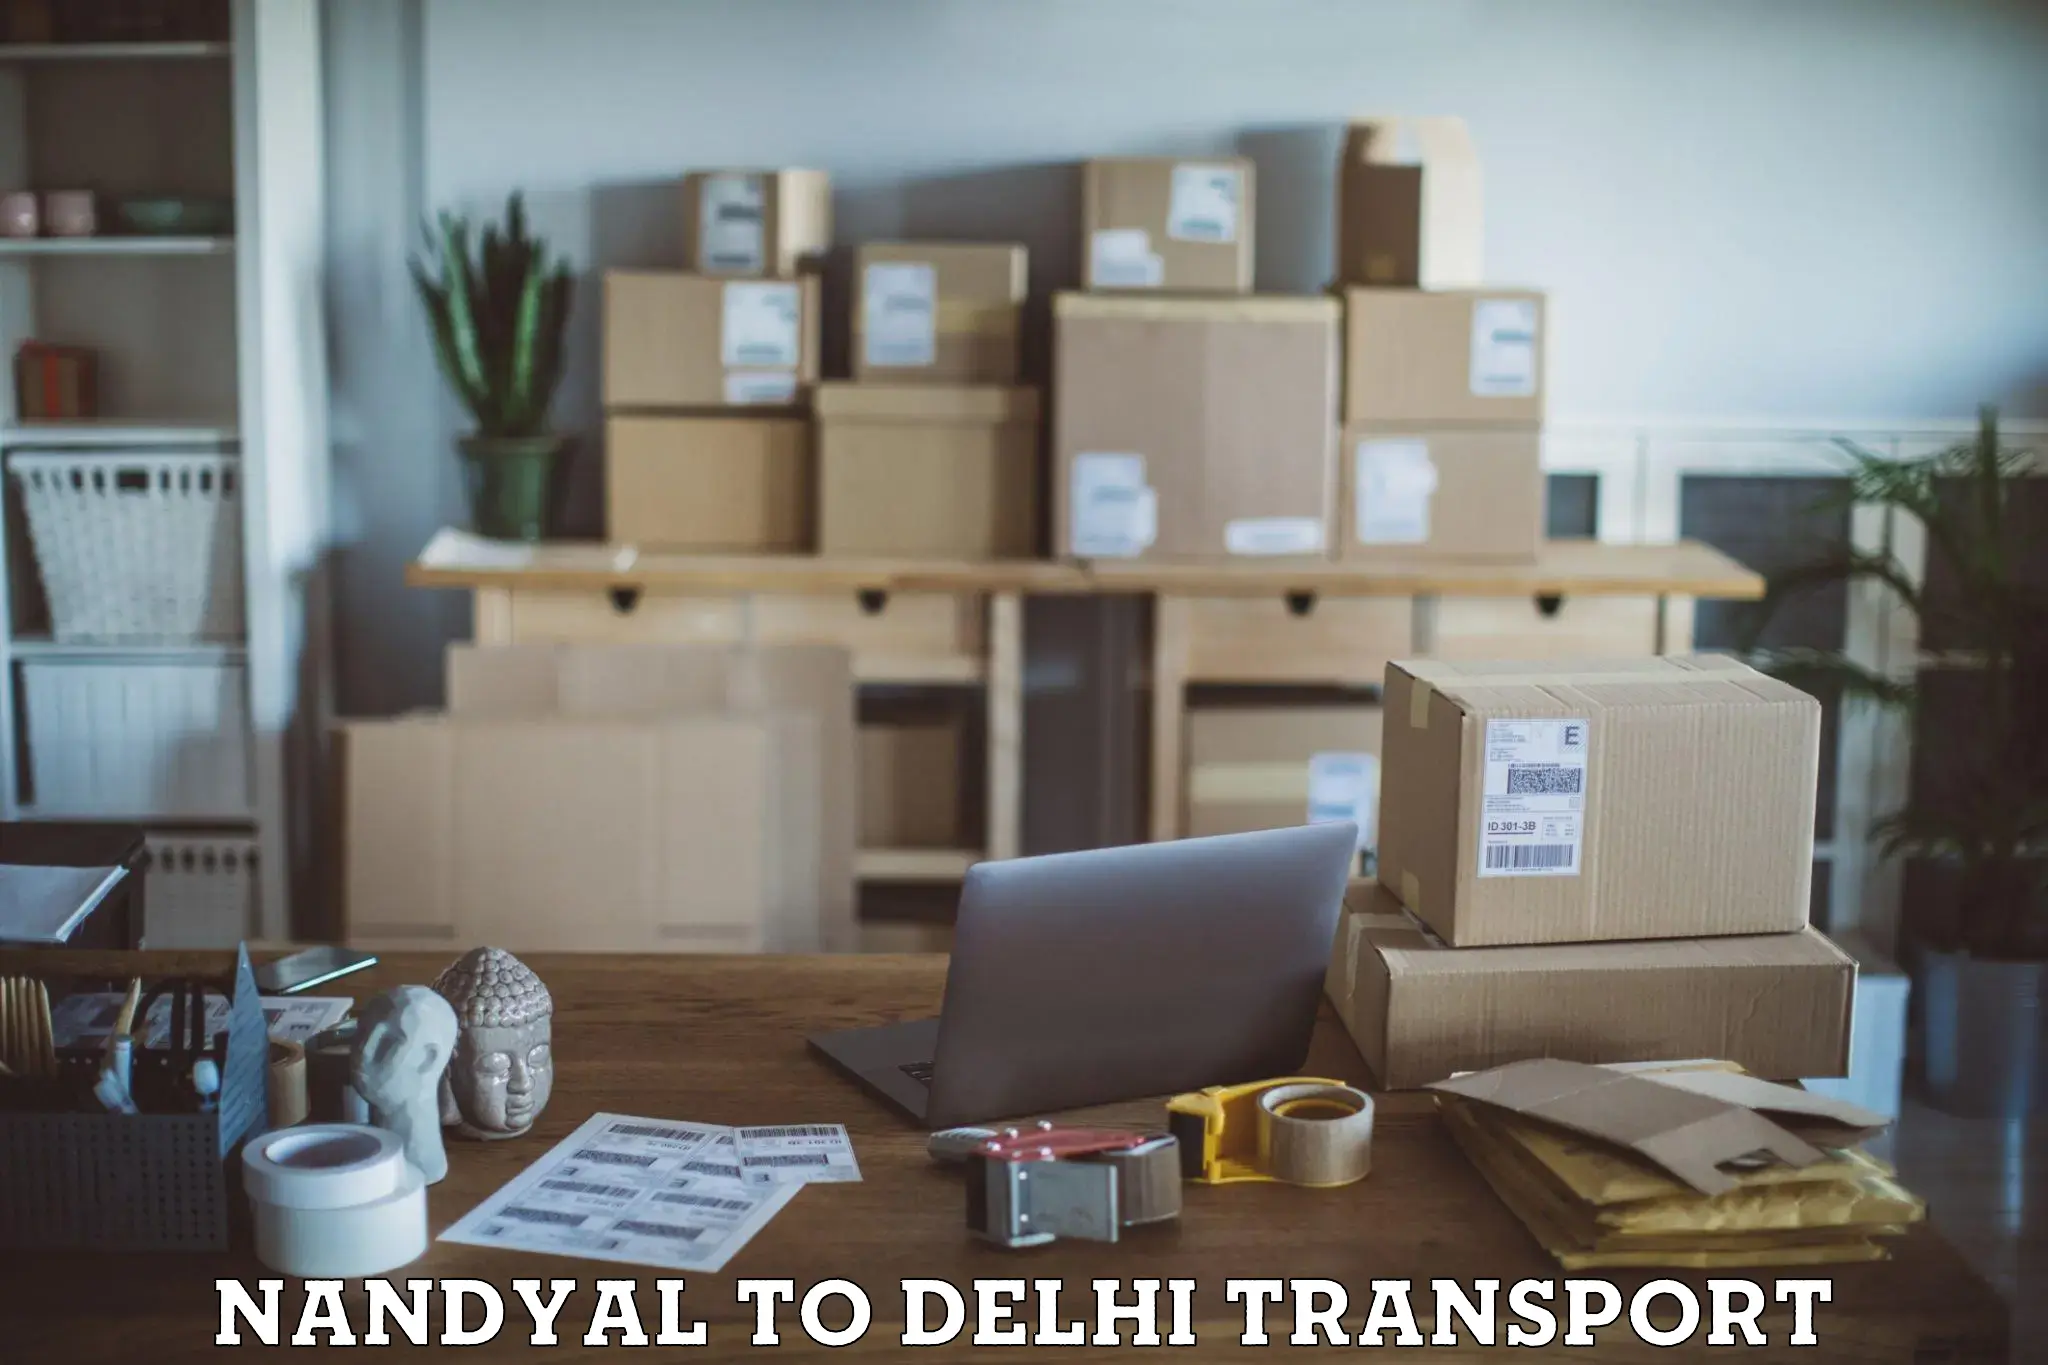 Transport services Nandyal to Delhi